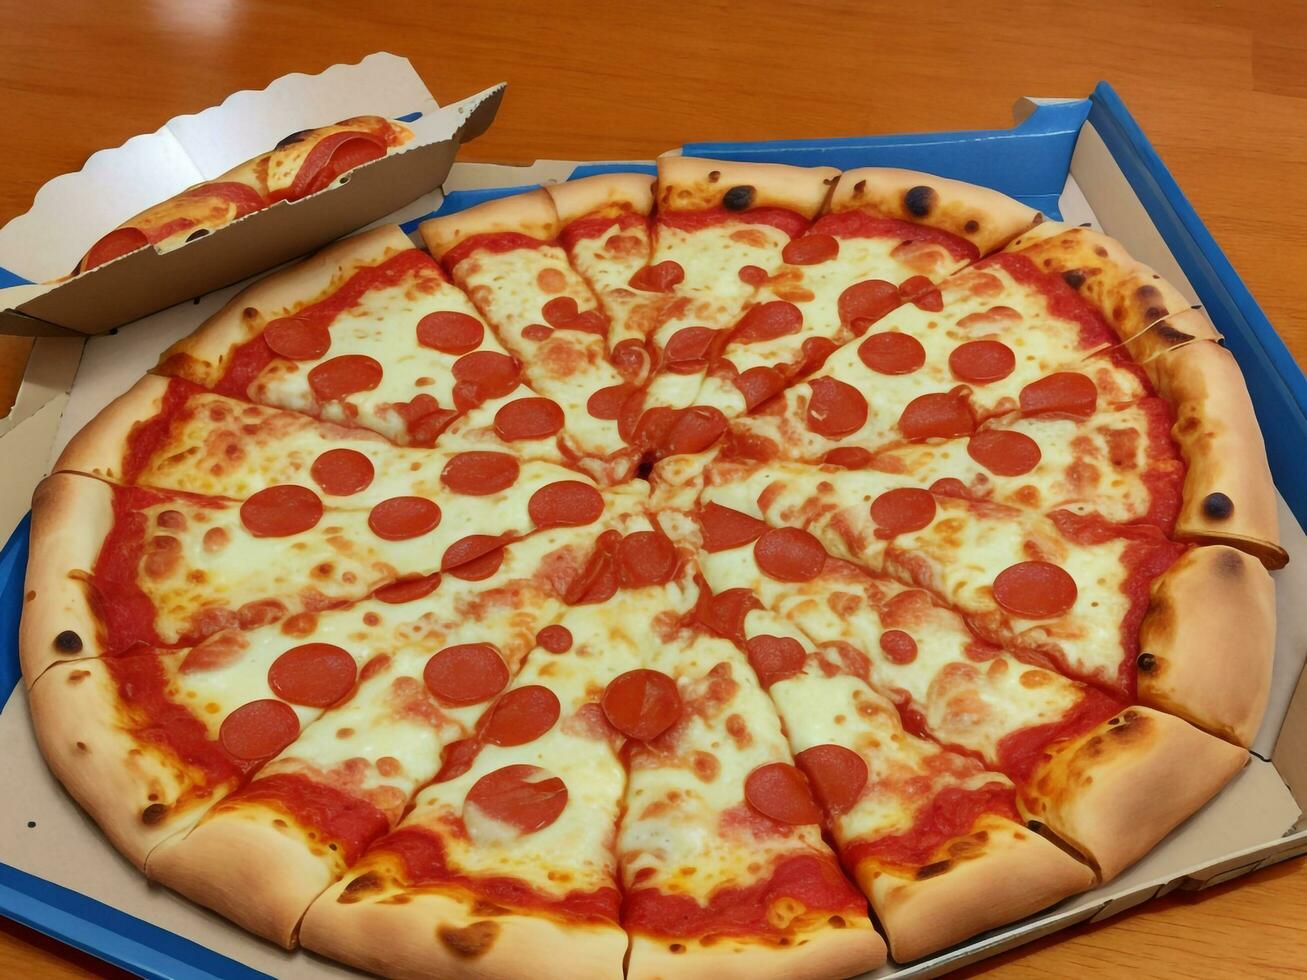 pizza mooi dichtbij omhoog beeld ai gegenereerd foto